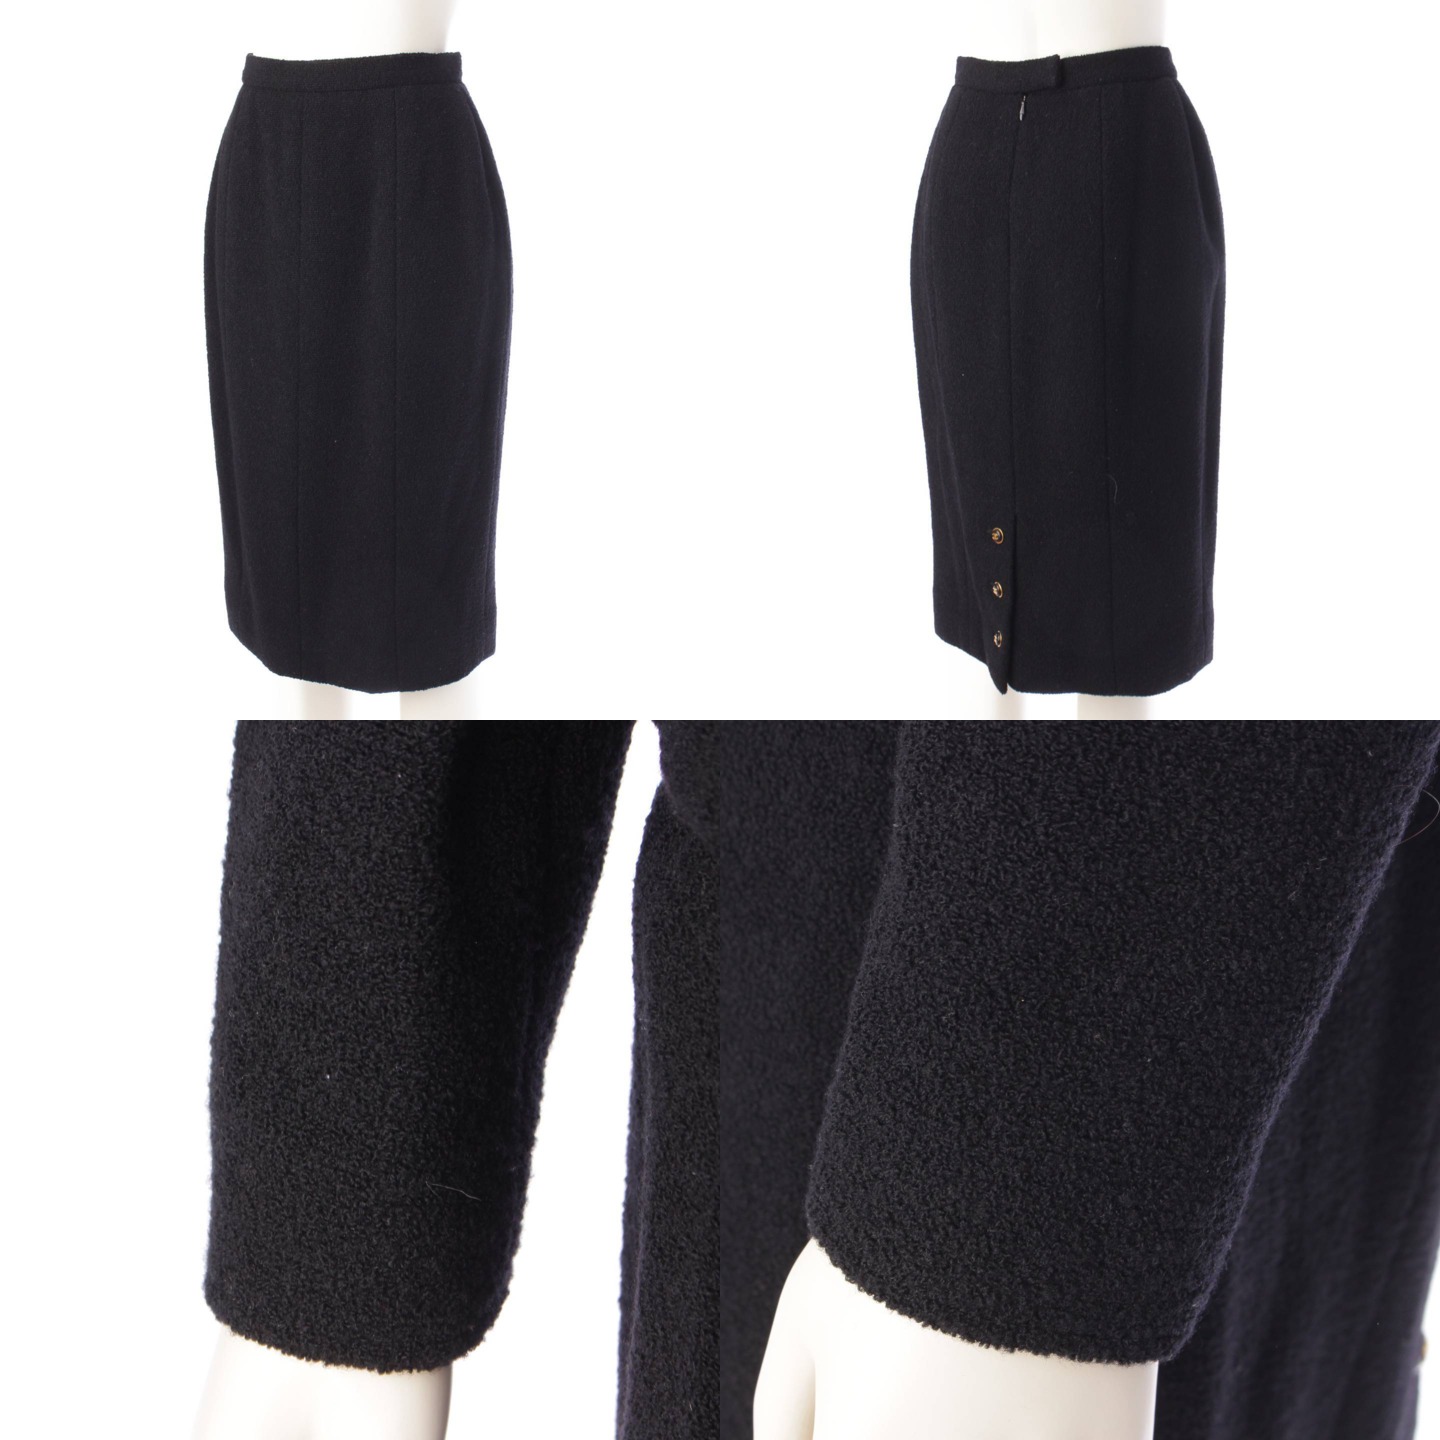 [ Chanel ]Chanel 95A здесь кнопка шерсть жакет & юбка выставить костюм черный 38 [ б/у ][ стандартный товар гарантия ]204393